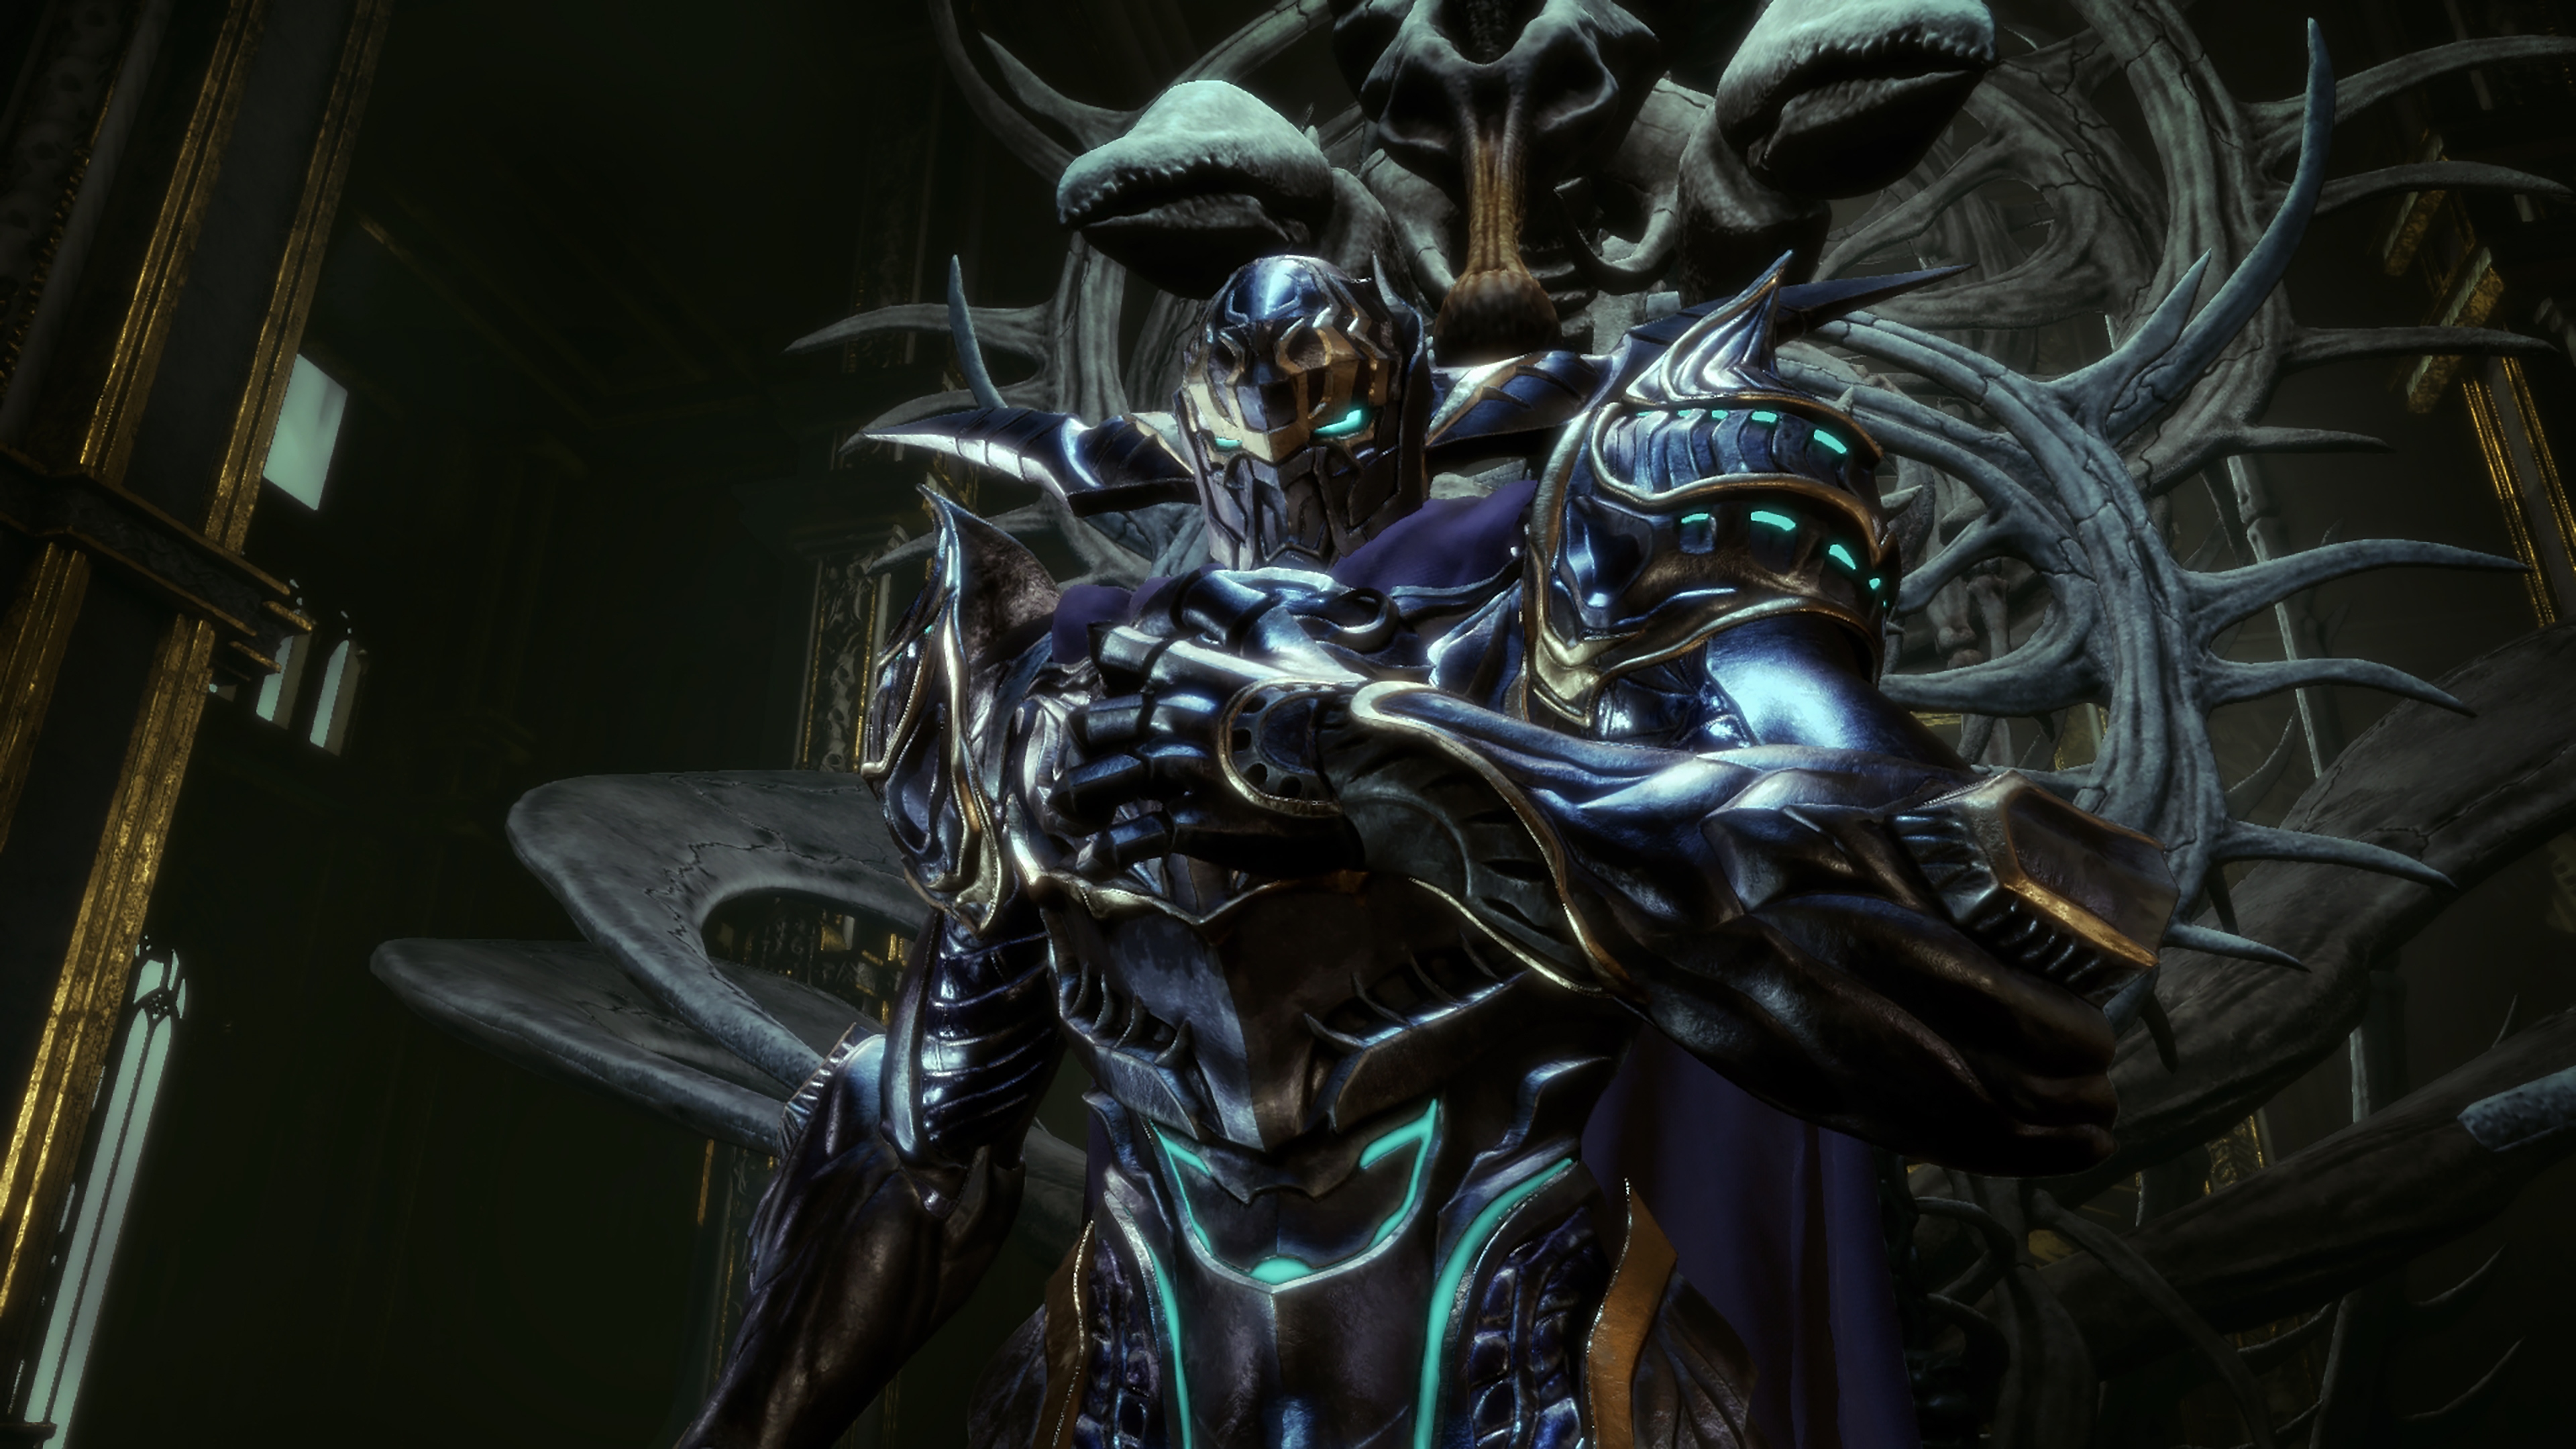 Stranger of Paradise Final Fantasy Origin – снимок экрана, на котором изображен персонаж в синей броне на троне из костей